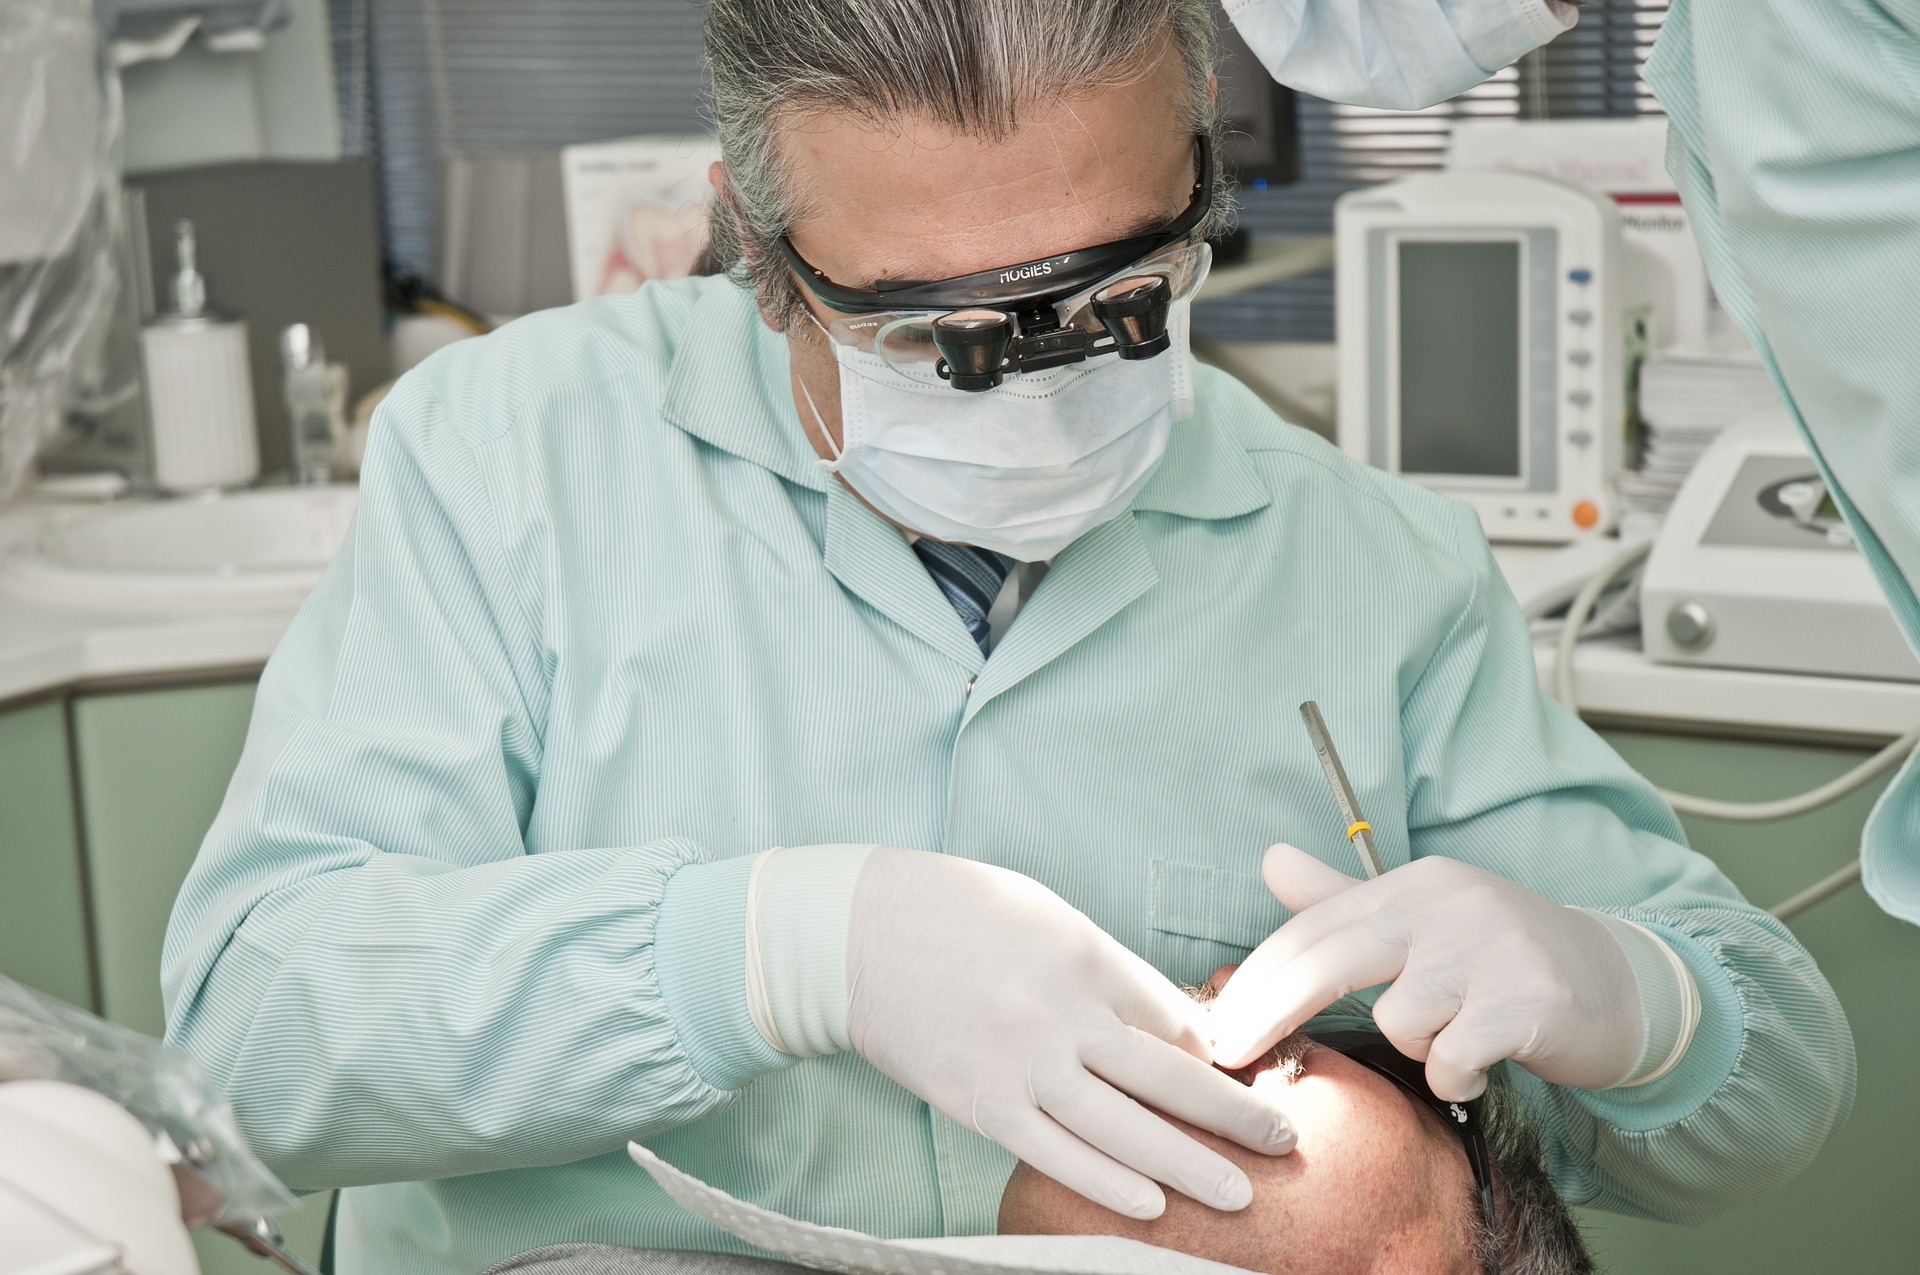 Dentiste effectuant une intervention sur un patient dans une clinique dentaire.